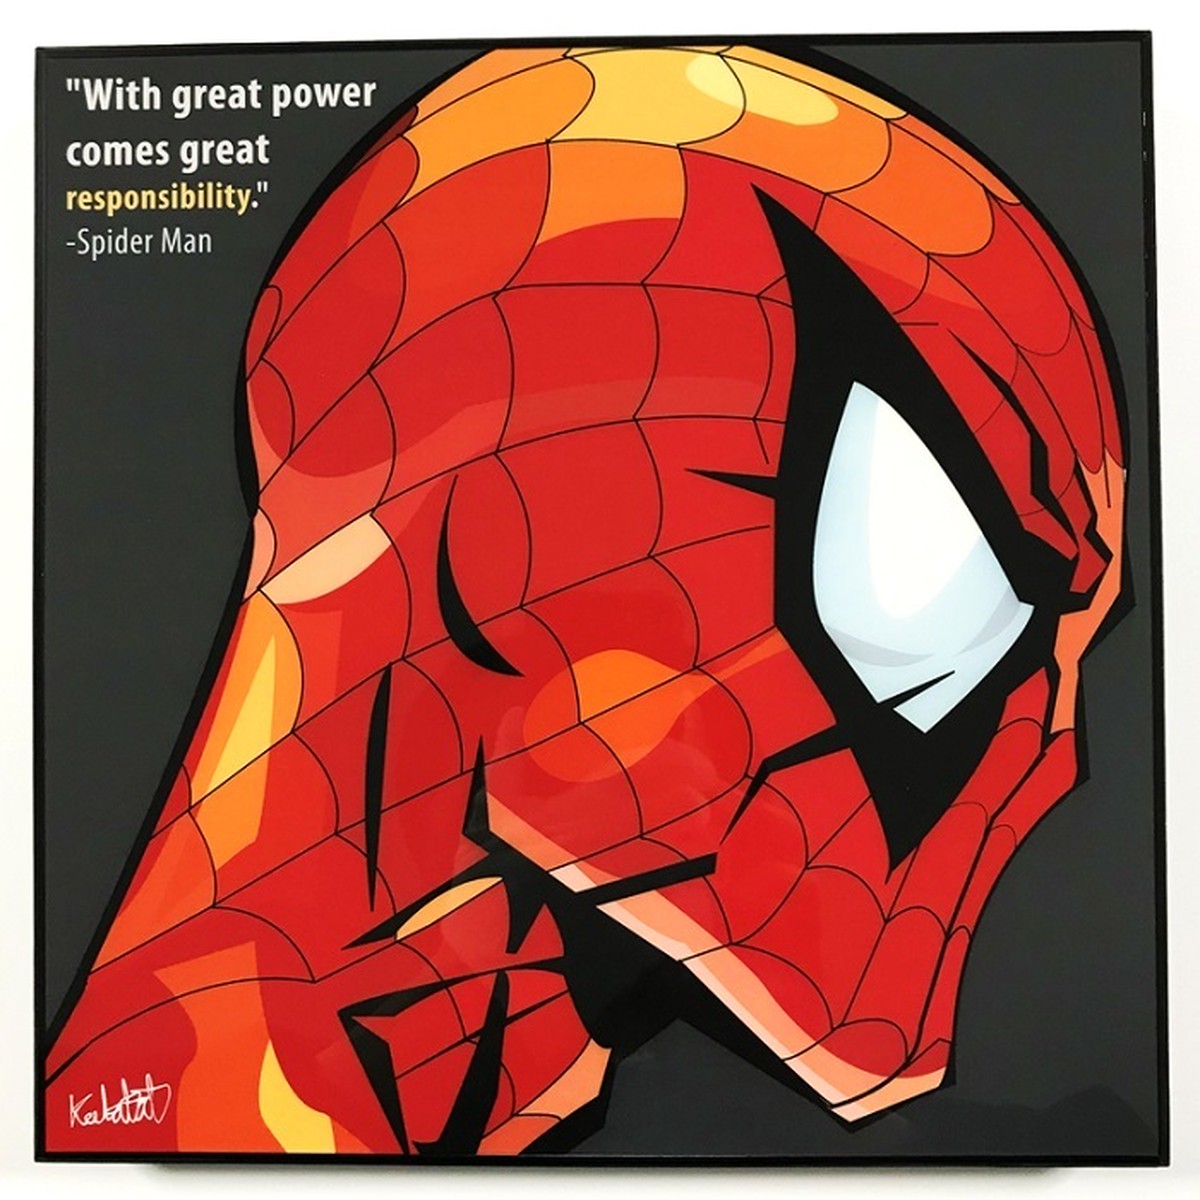 Spider Man スパイダーマン ポップアートパネル Keetatat Sitthiket フレーム ボード グラフィック ウォール 絵画 壁立て 壁掛けインテリア 額 ポスター プレゼント ギフト インスタ映え 映画 アベンジャーズ Marvel マーベル アメコミ キータタットシティケット